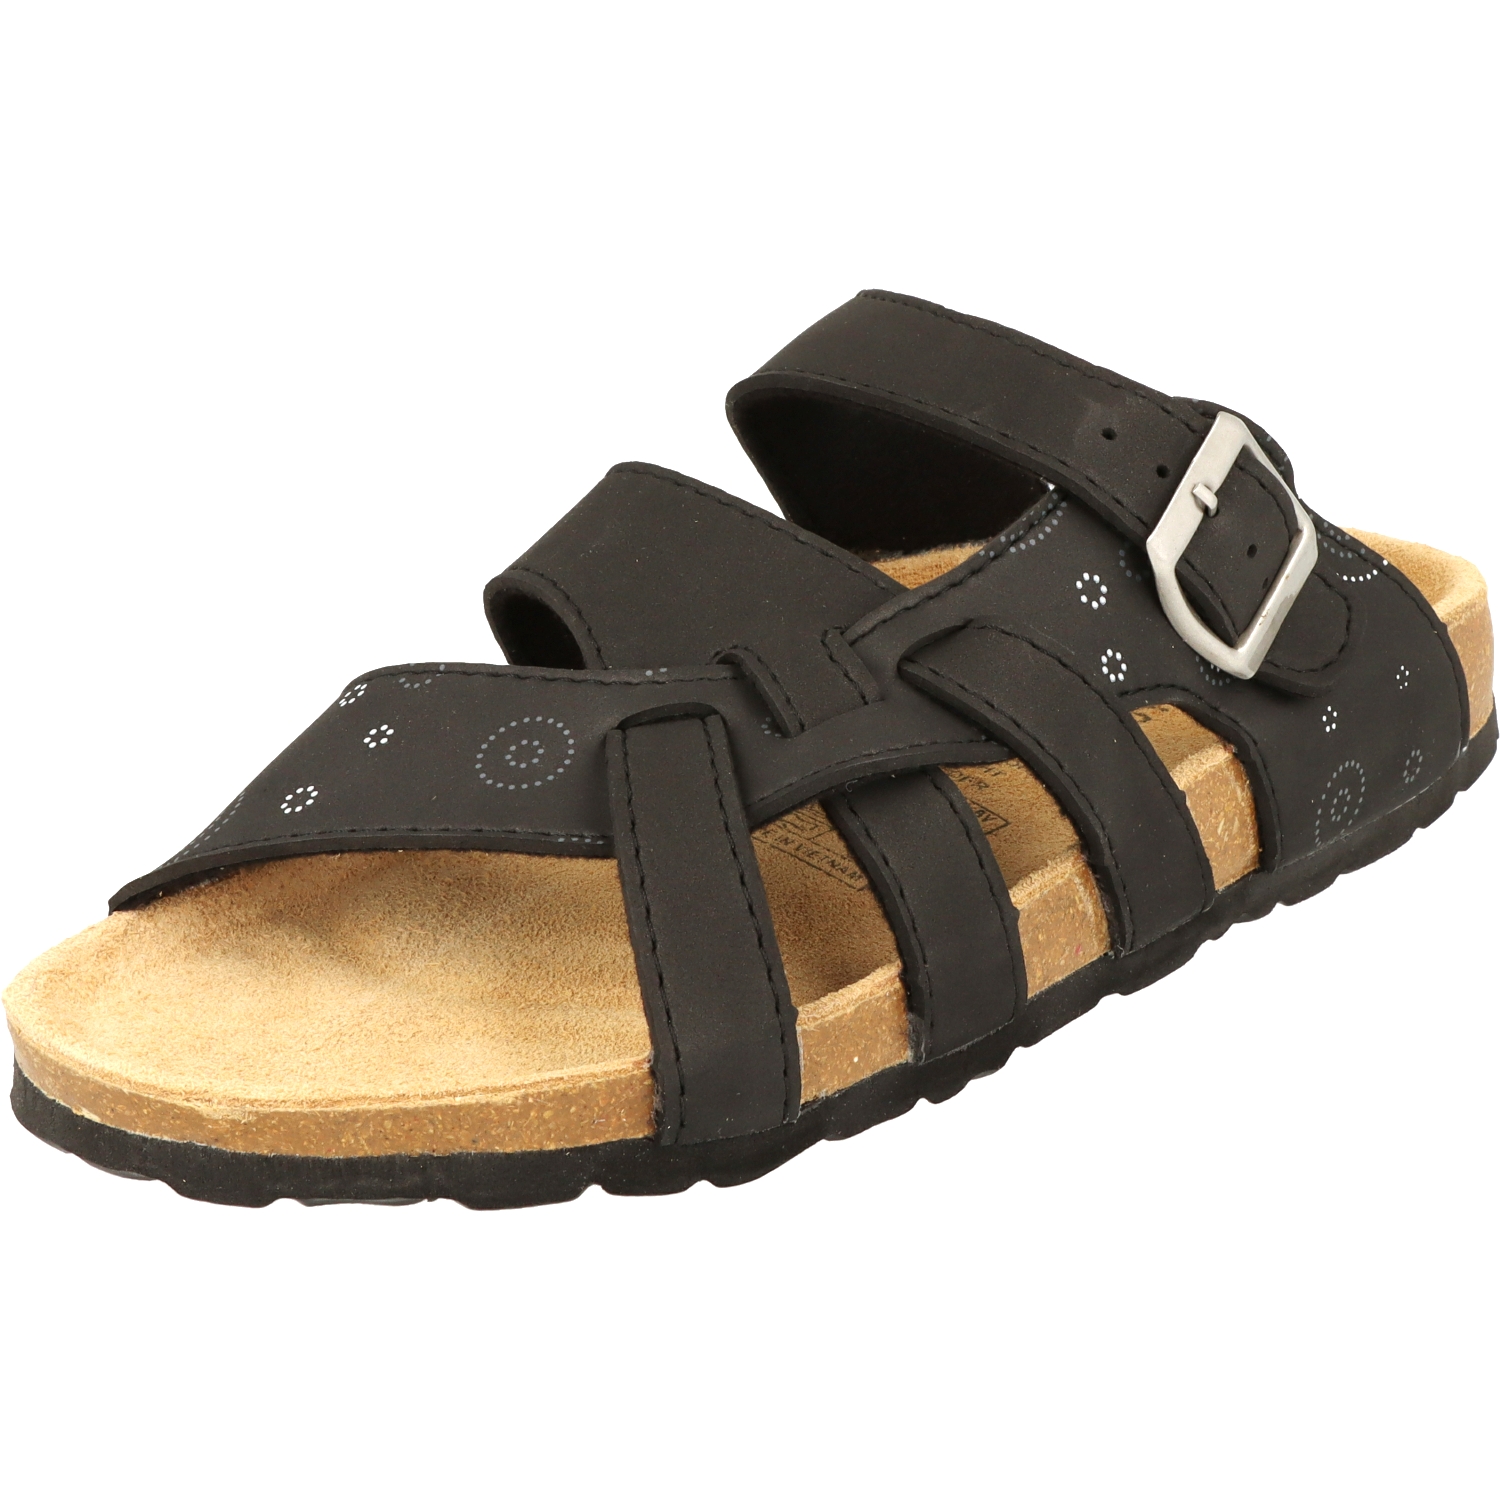 Cloxx Damen Schuhe T67913.80 Pantolette Hausschuhe Sandale Lederfußbett Schwarz